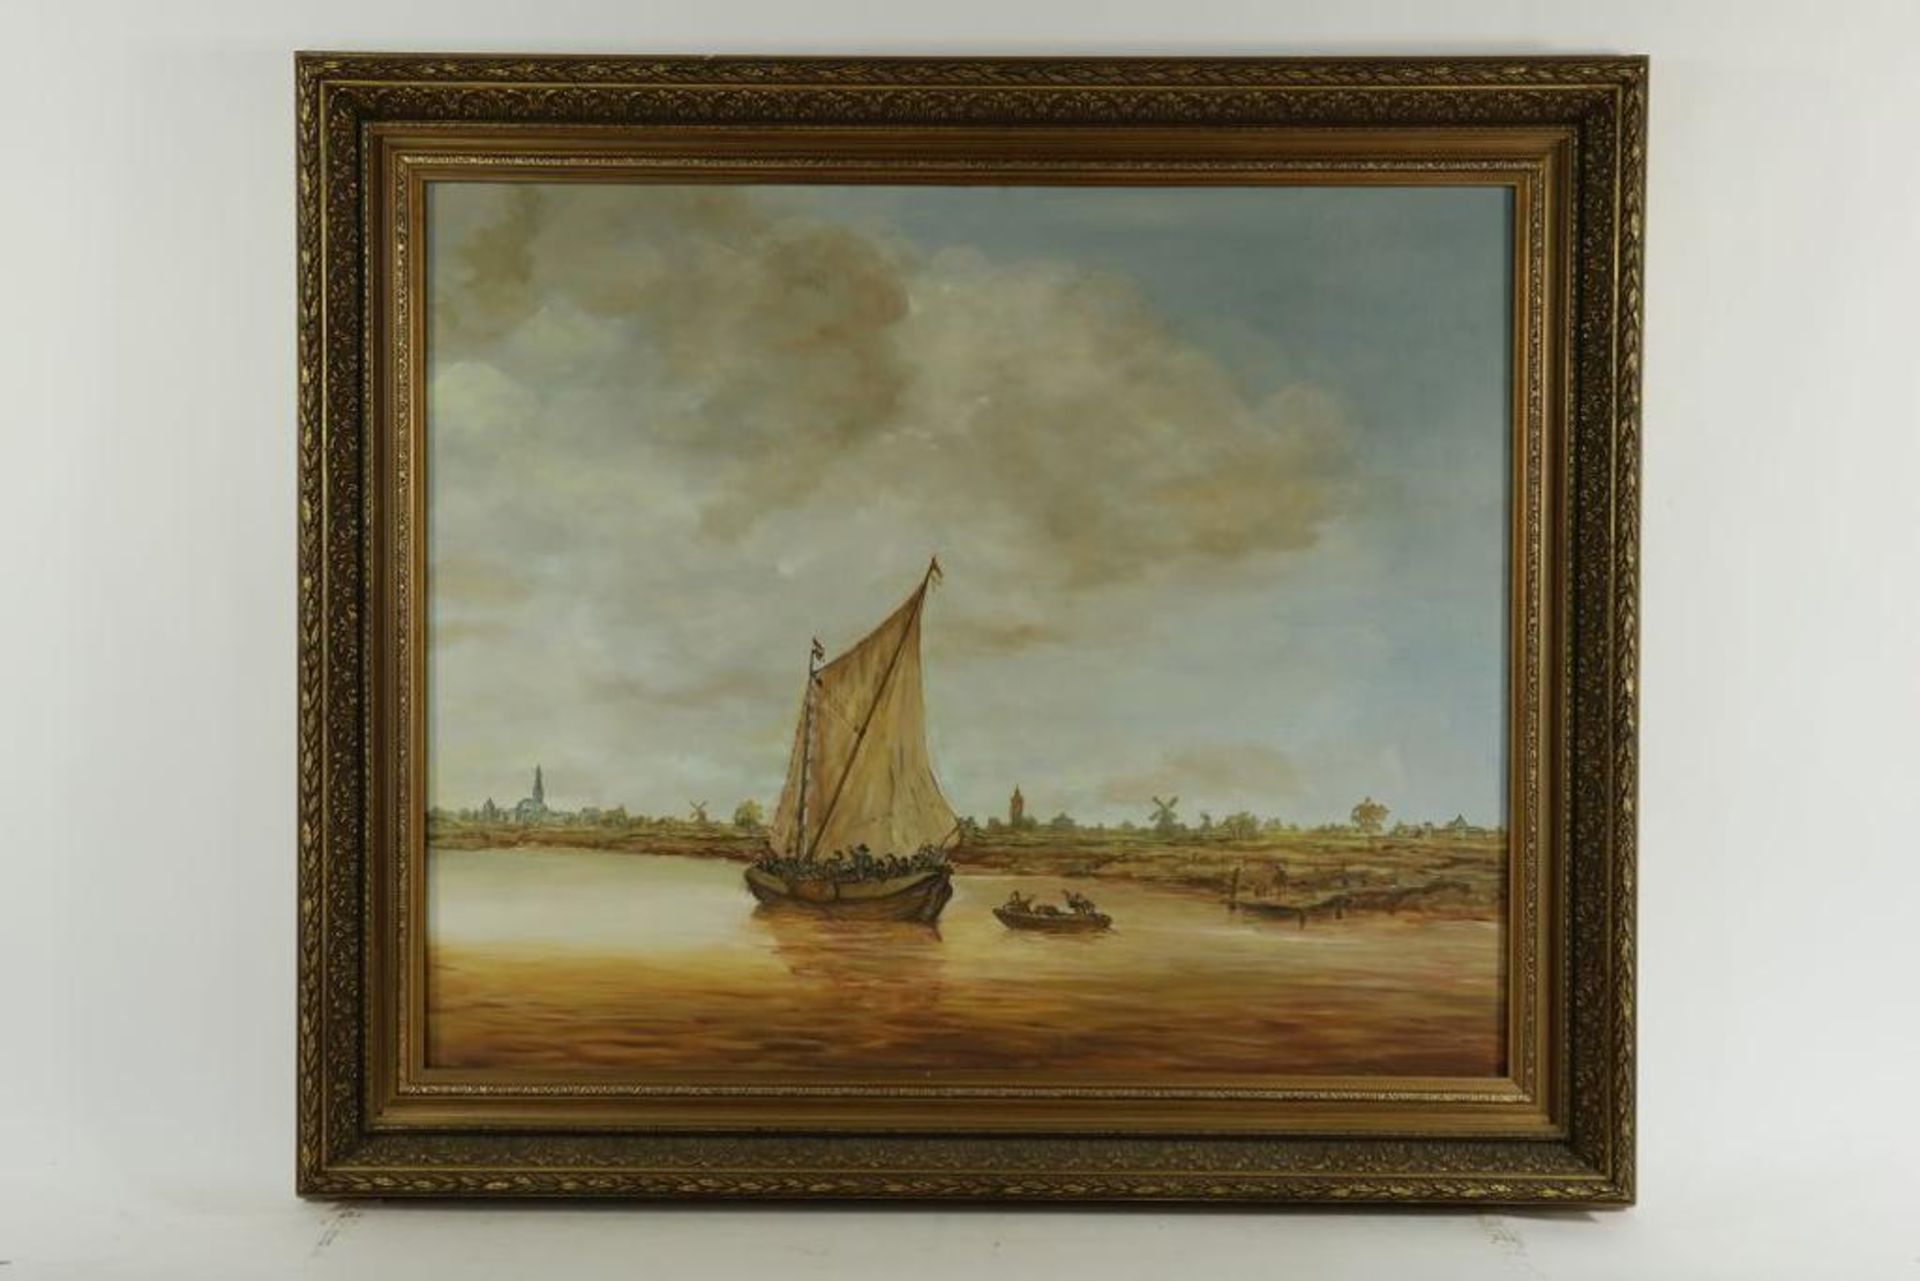 Onbekend, onges. naar Jan van Goyen, zeilboot met figuren in vaart, doek 90 x 110 cm. - Bild 2 aus 3